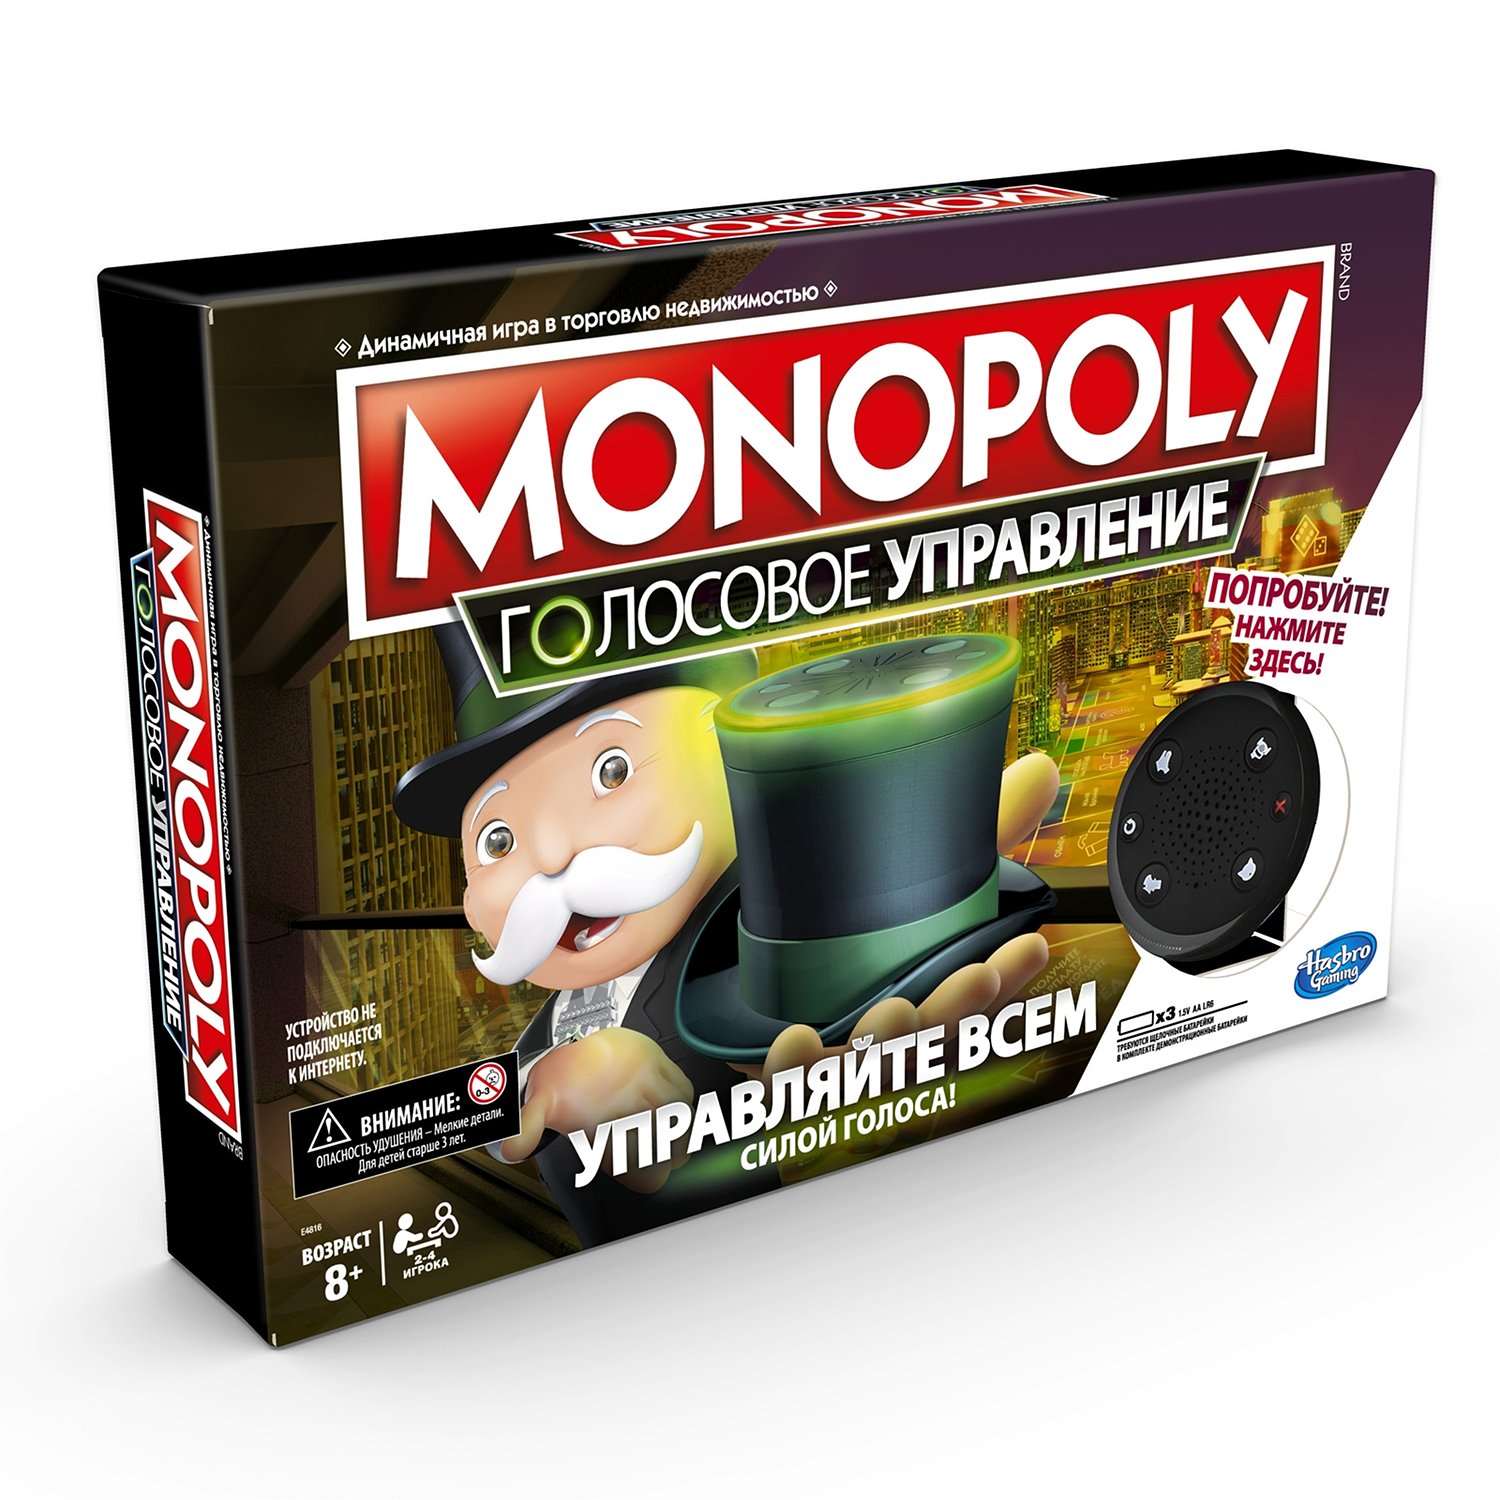 Игра настольная Monopoly Монополия голосовое управлен ие E4816121 - фото 2